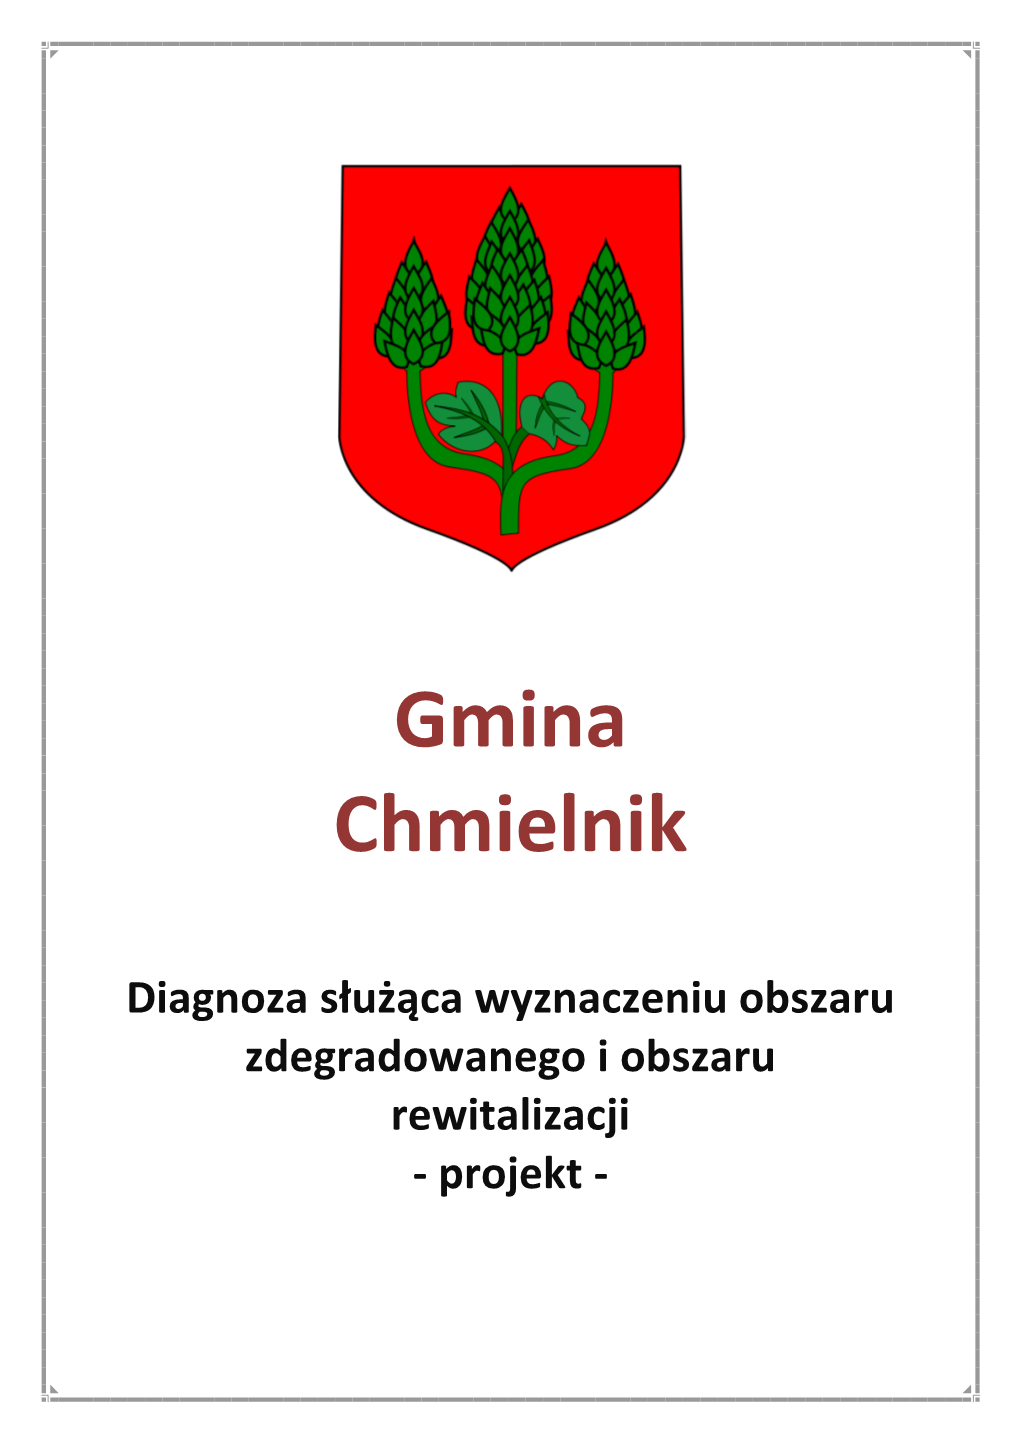 Gmina Chmielnik